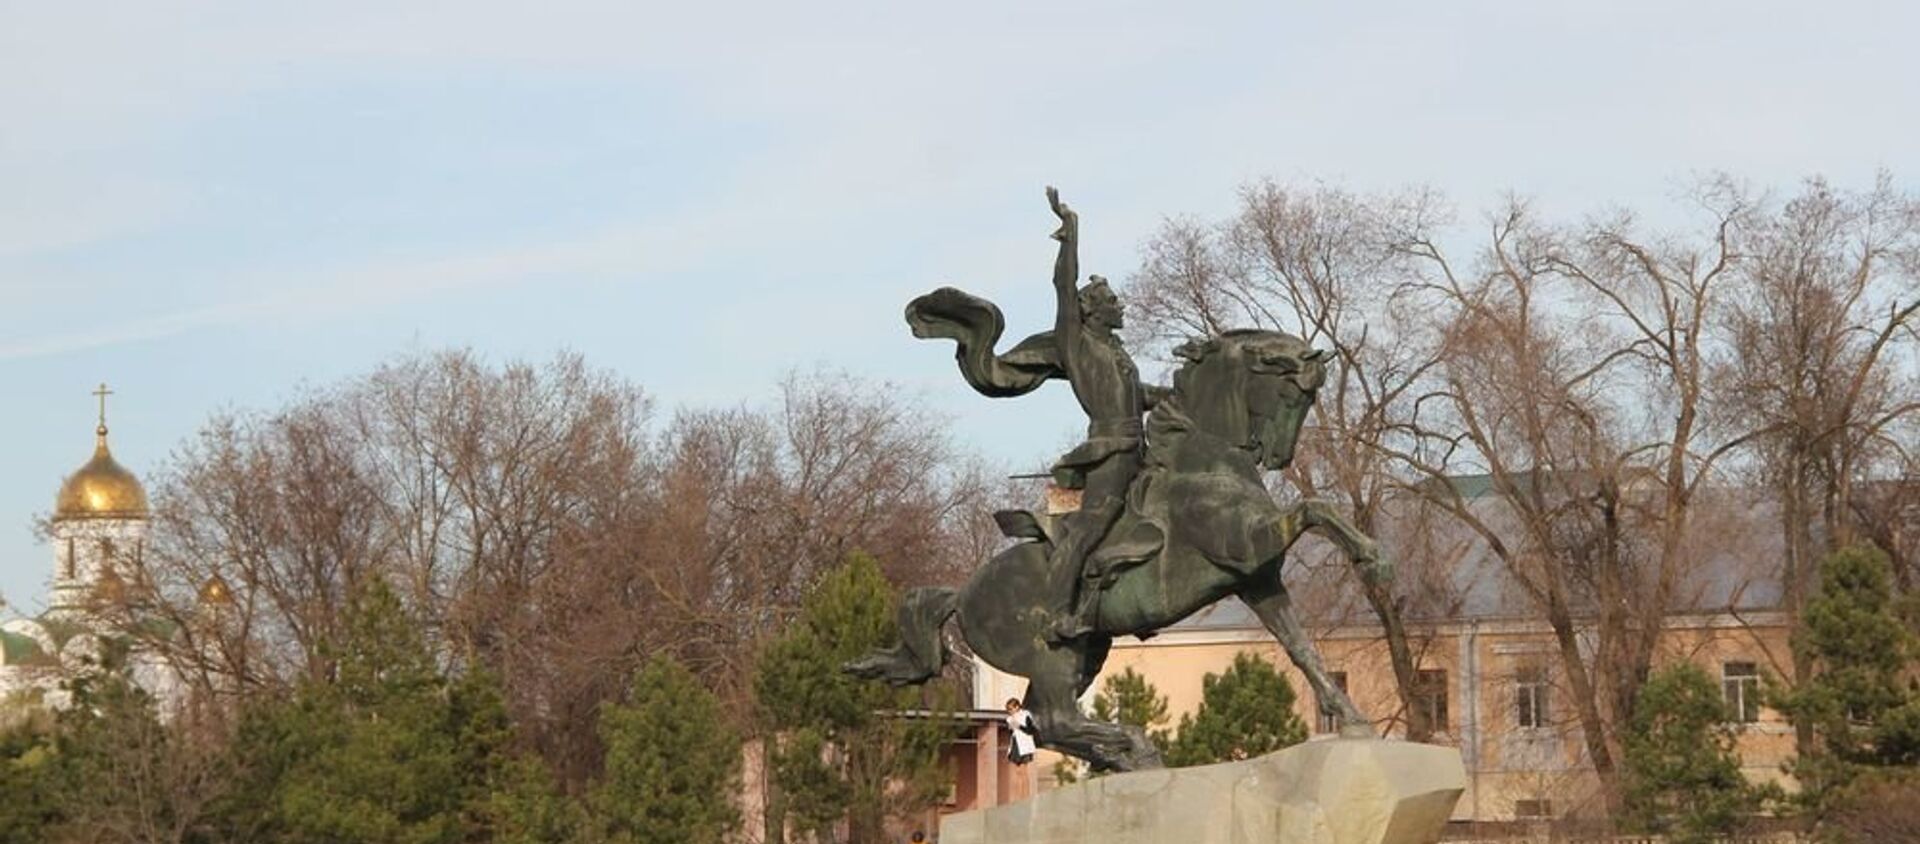 Памятник Суворову в Тирасполе. Приднестровье - Sputnik Молдова, 1920, 24.12.2020